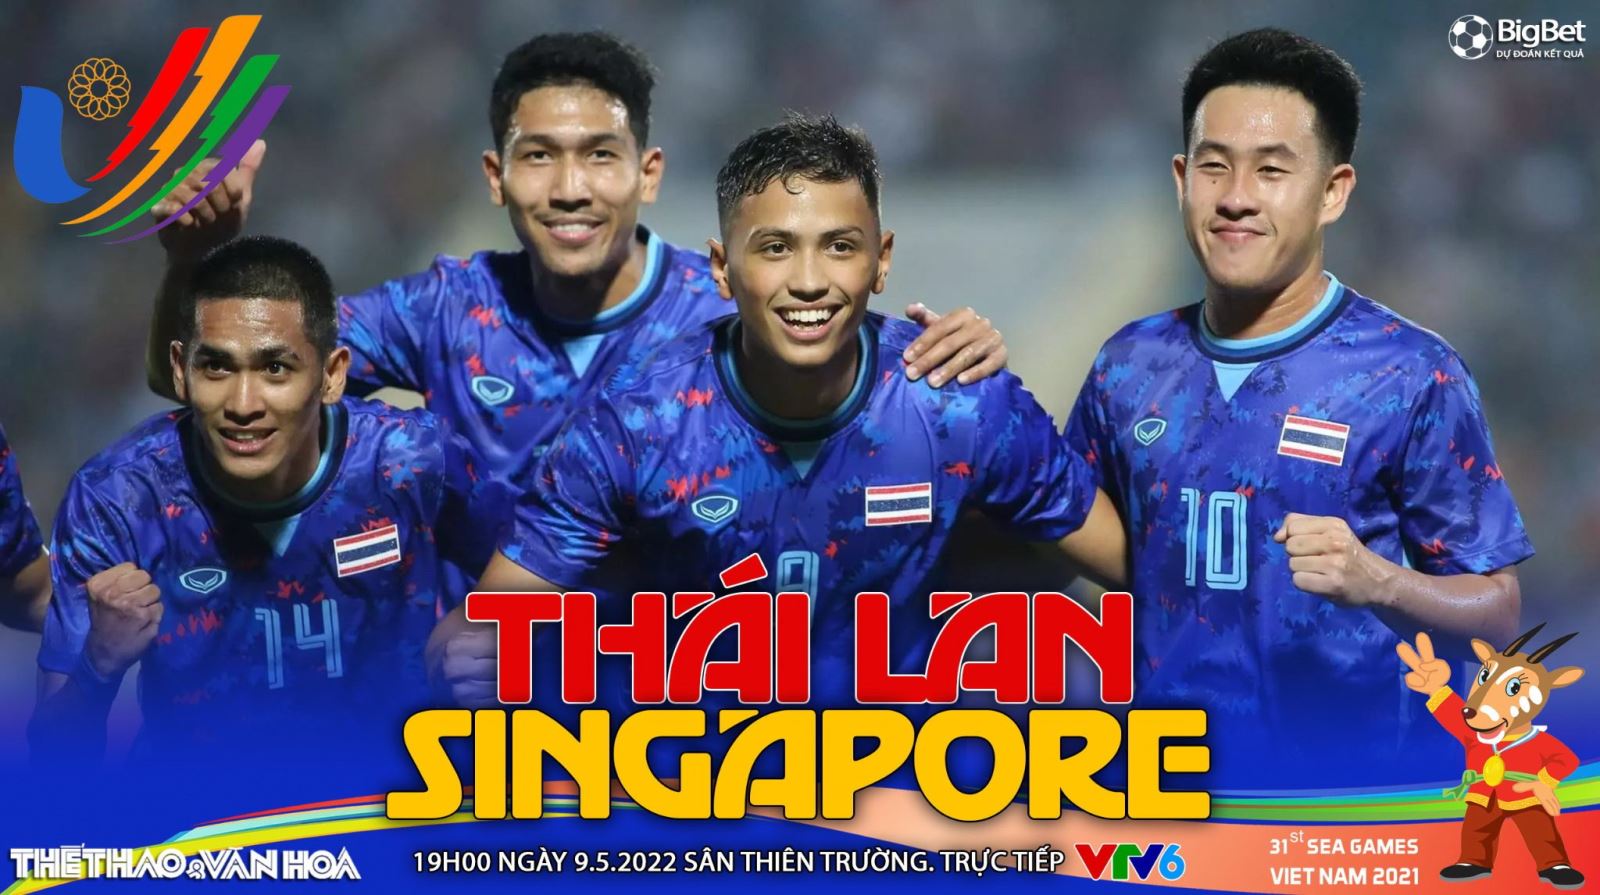 Soi kèo nhà cái U23 Thái Lan vs U23 Singapore. Nhận định, dự đoán bóng đá SEA Games 31 (19h00, 9/5)_627886e722a96.jpeg